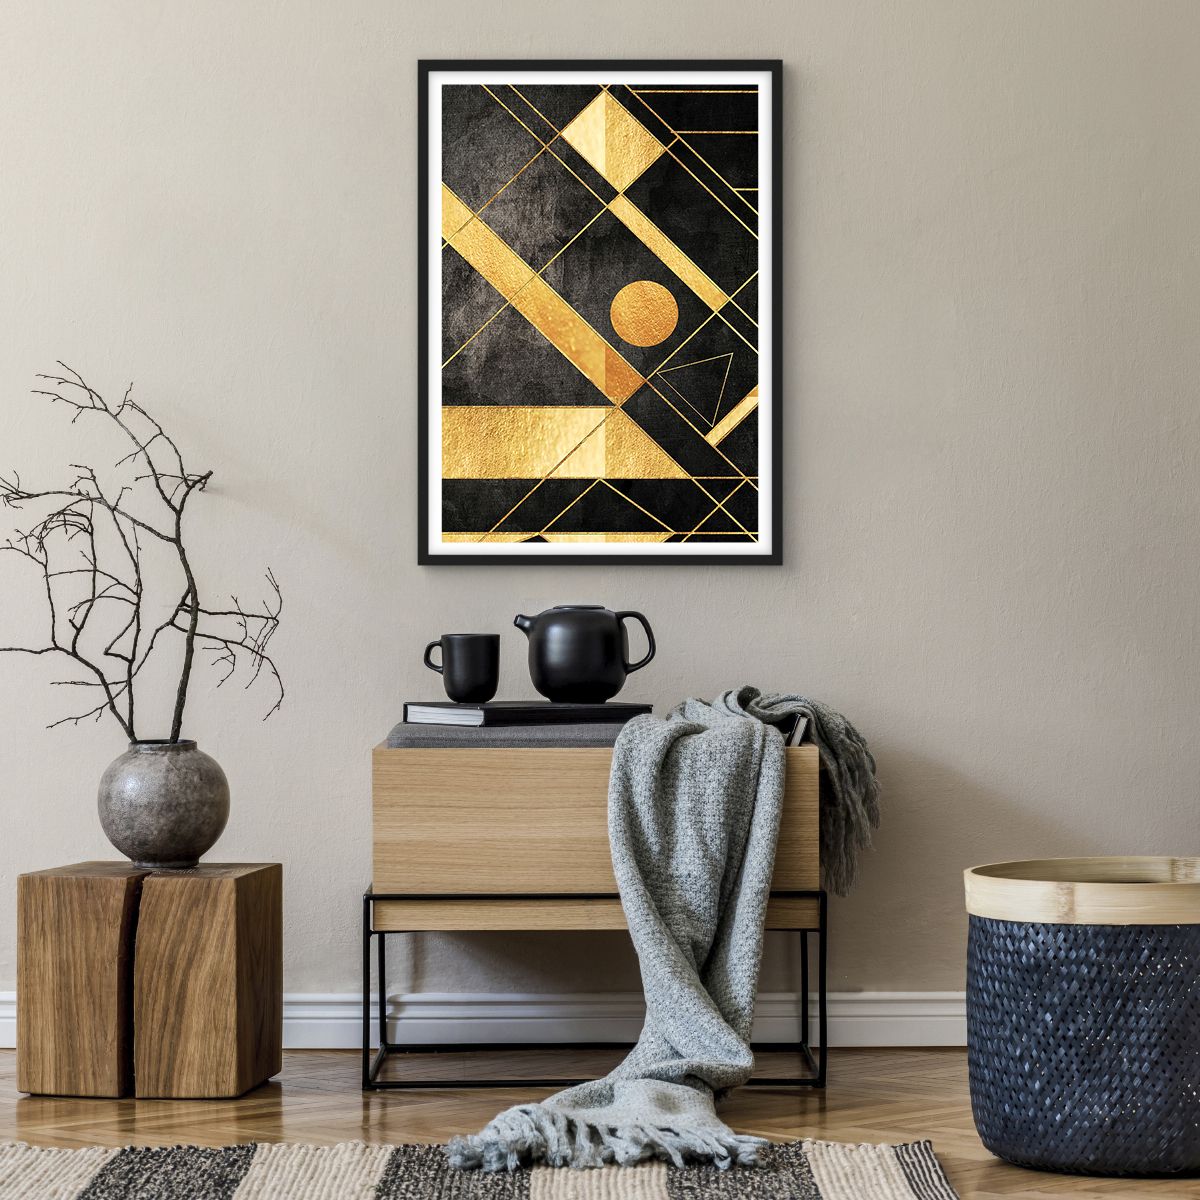 Poster in einem schwarzem Rahmen Abstraktion, Poster in einem schwarzem Rahmen Kunst, Poster in einem schwarzem Rahmen Gold, Poster in einem schwarzem Rahmen Geometrisches Muster, Poster in einem schwarzem Rahmen Grafik